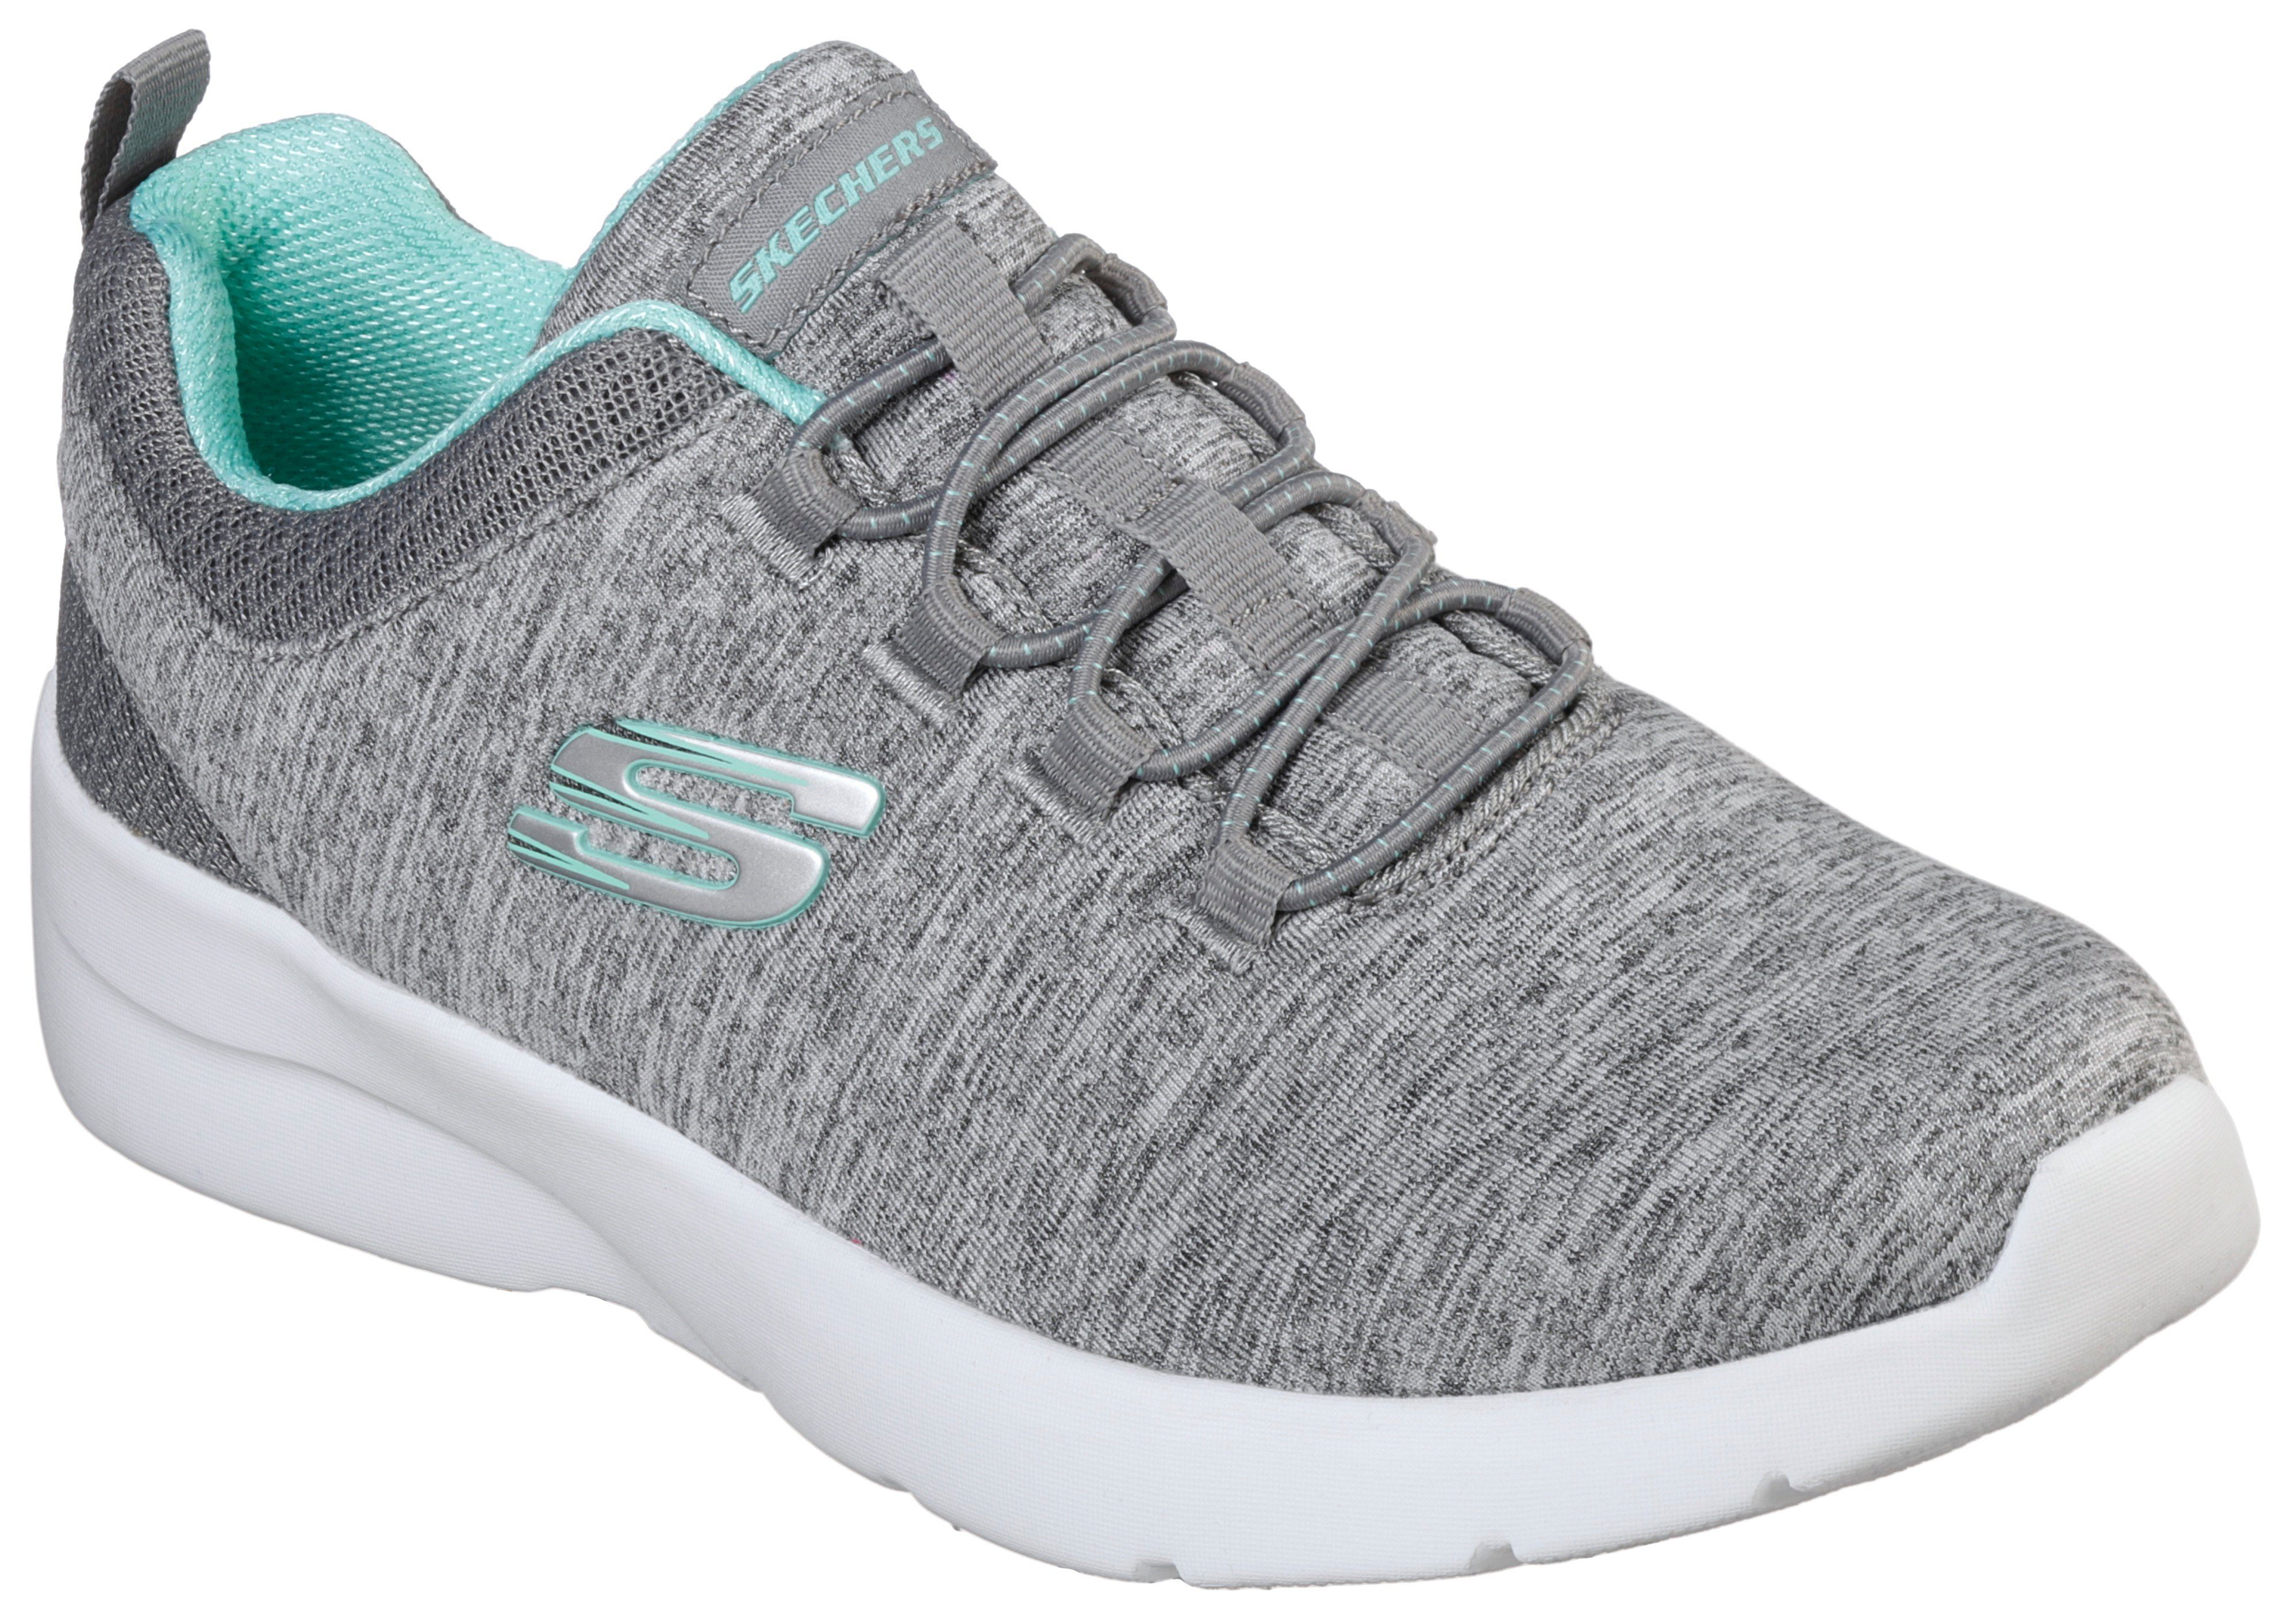 Maschinenwäsche Skechers Sneaker für Slip-On geeignet DYNAMIGHT grau-mint A 2.0-IN FLASH